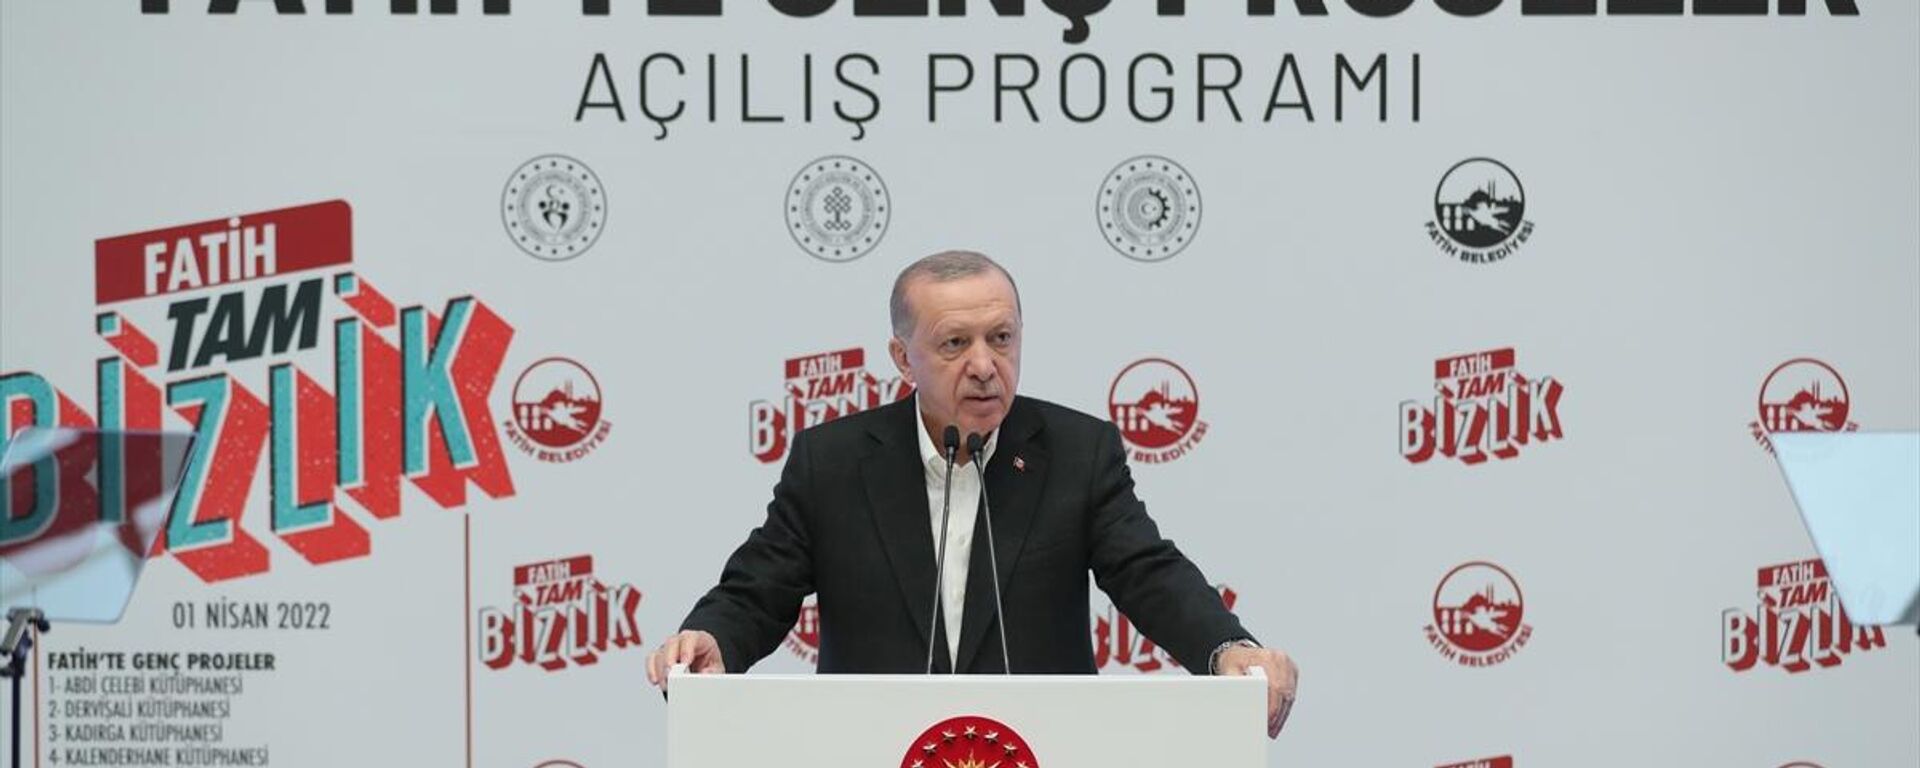 Cumhurbaşkanı Recep Tayyip Erdoğan, Fatih Belediyesi Merkez Kütüphanesi'nde düzenlenen Fatih'te Genç Projeler programının açılışına katıldı. - Sputnik Türkiye, 1920, 01.04.2022